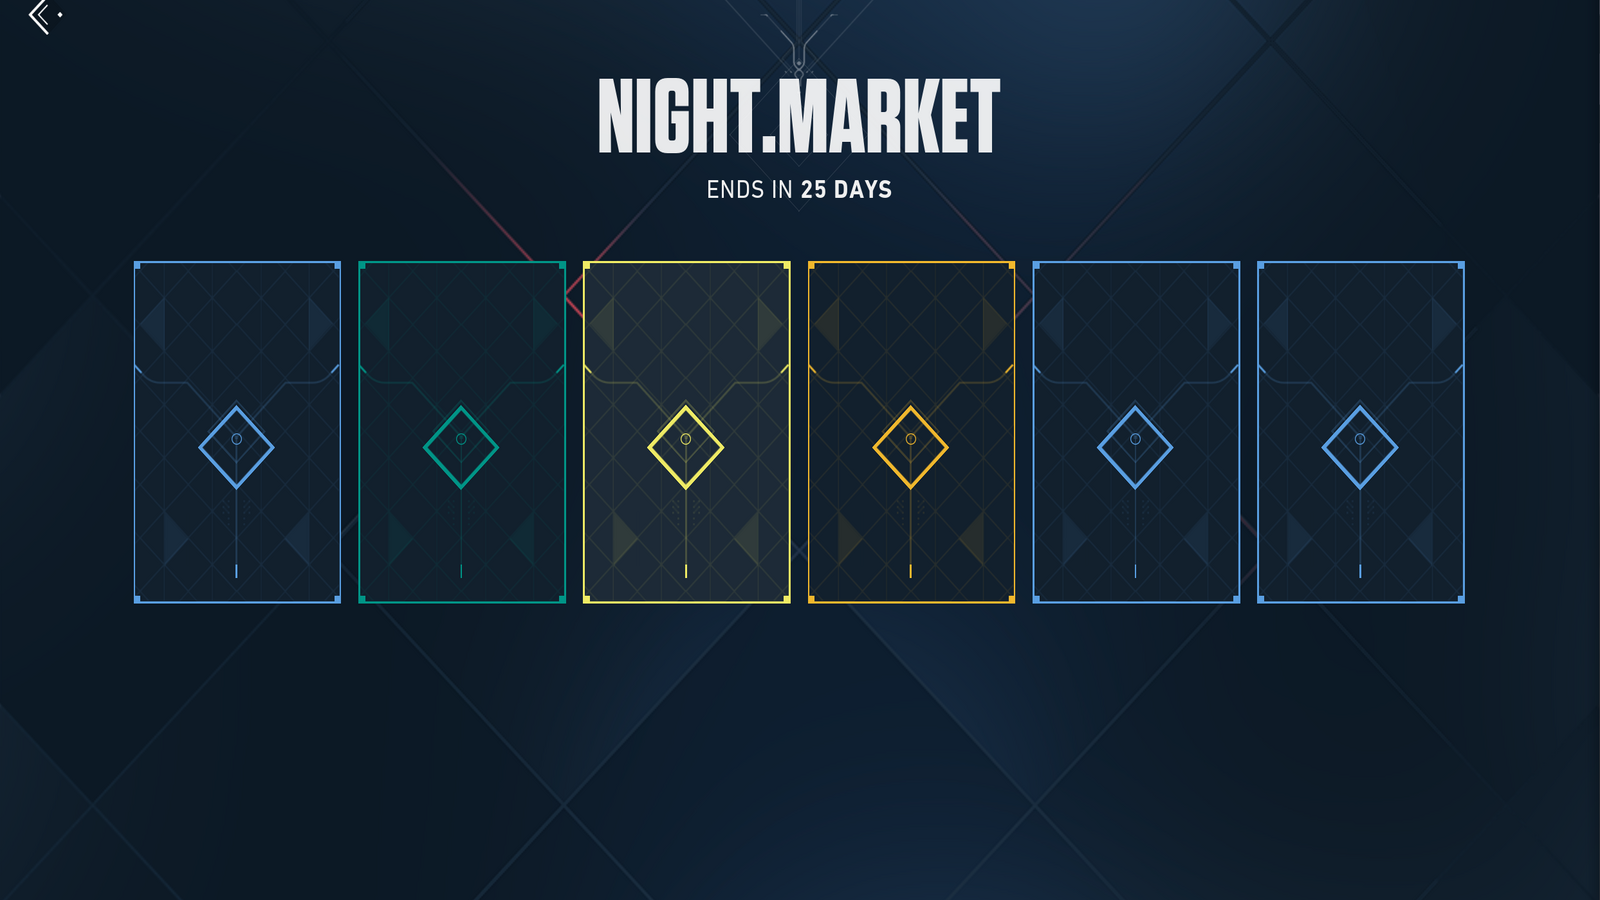 Une capture d'écran d'un nouveau marché nocturne, chaque peau toujours cachée derrière une carte de révélation